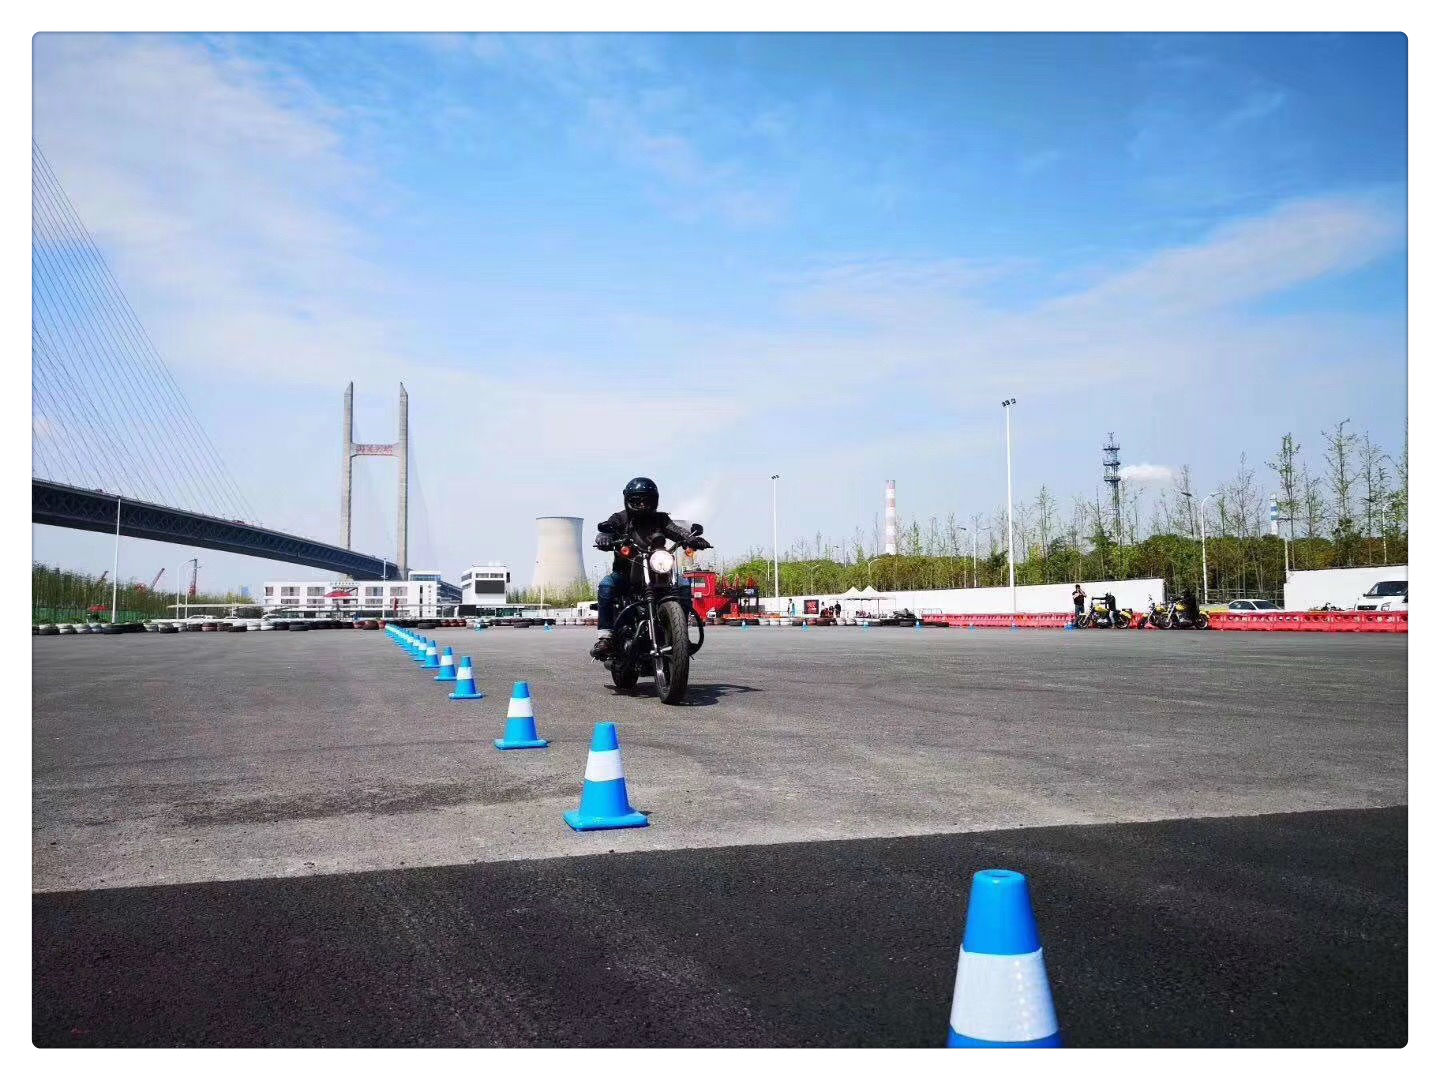 摩托车安全驾驶培训课程-基础班 - MTCHOME